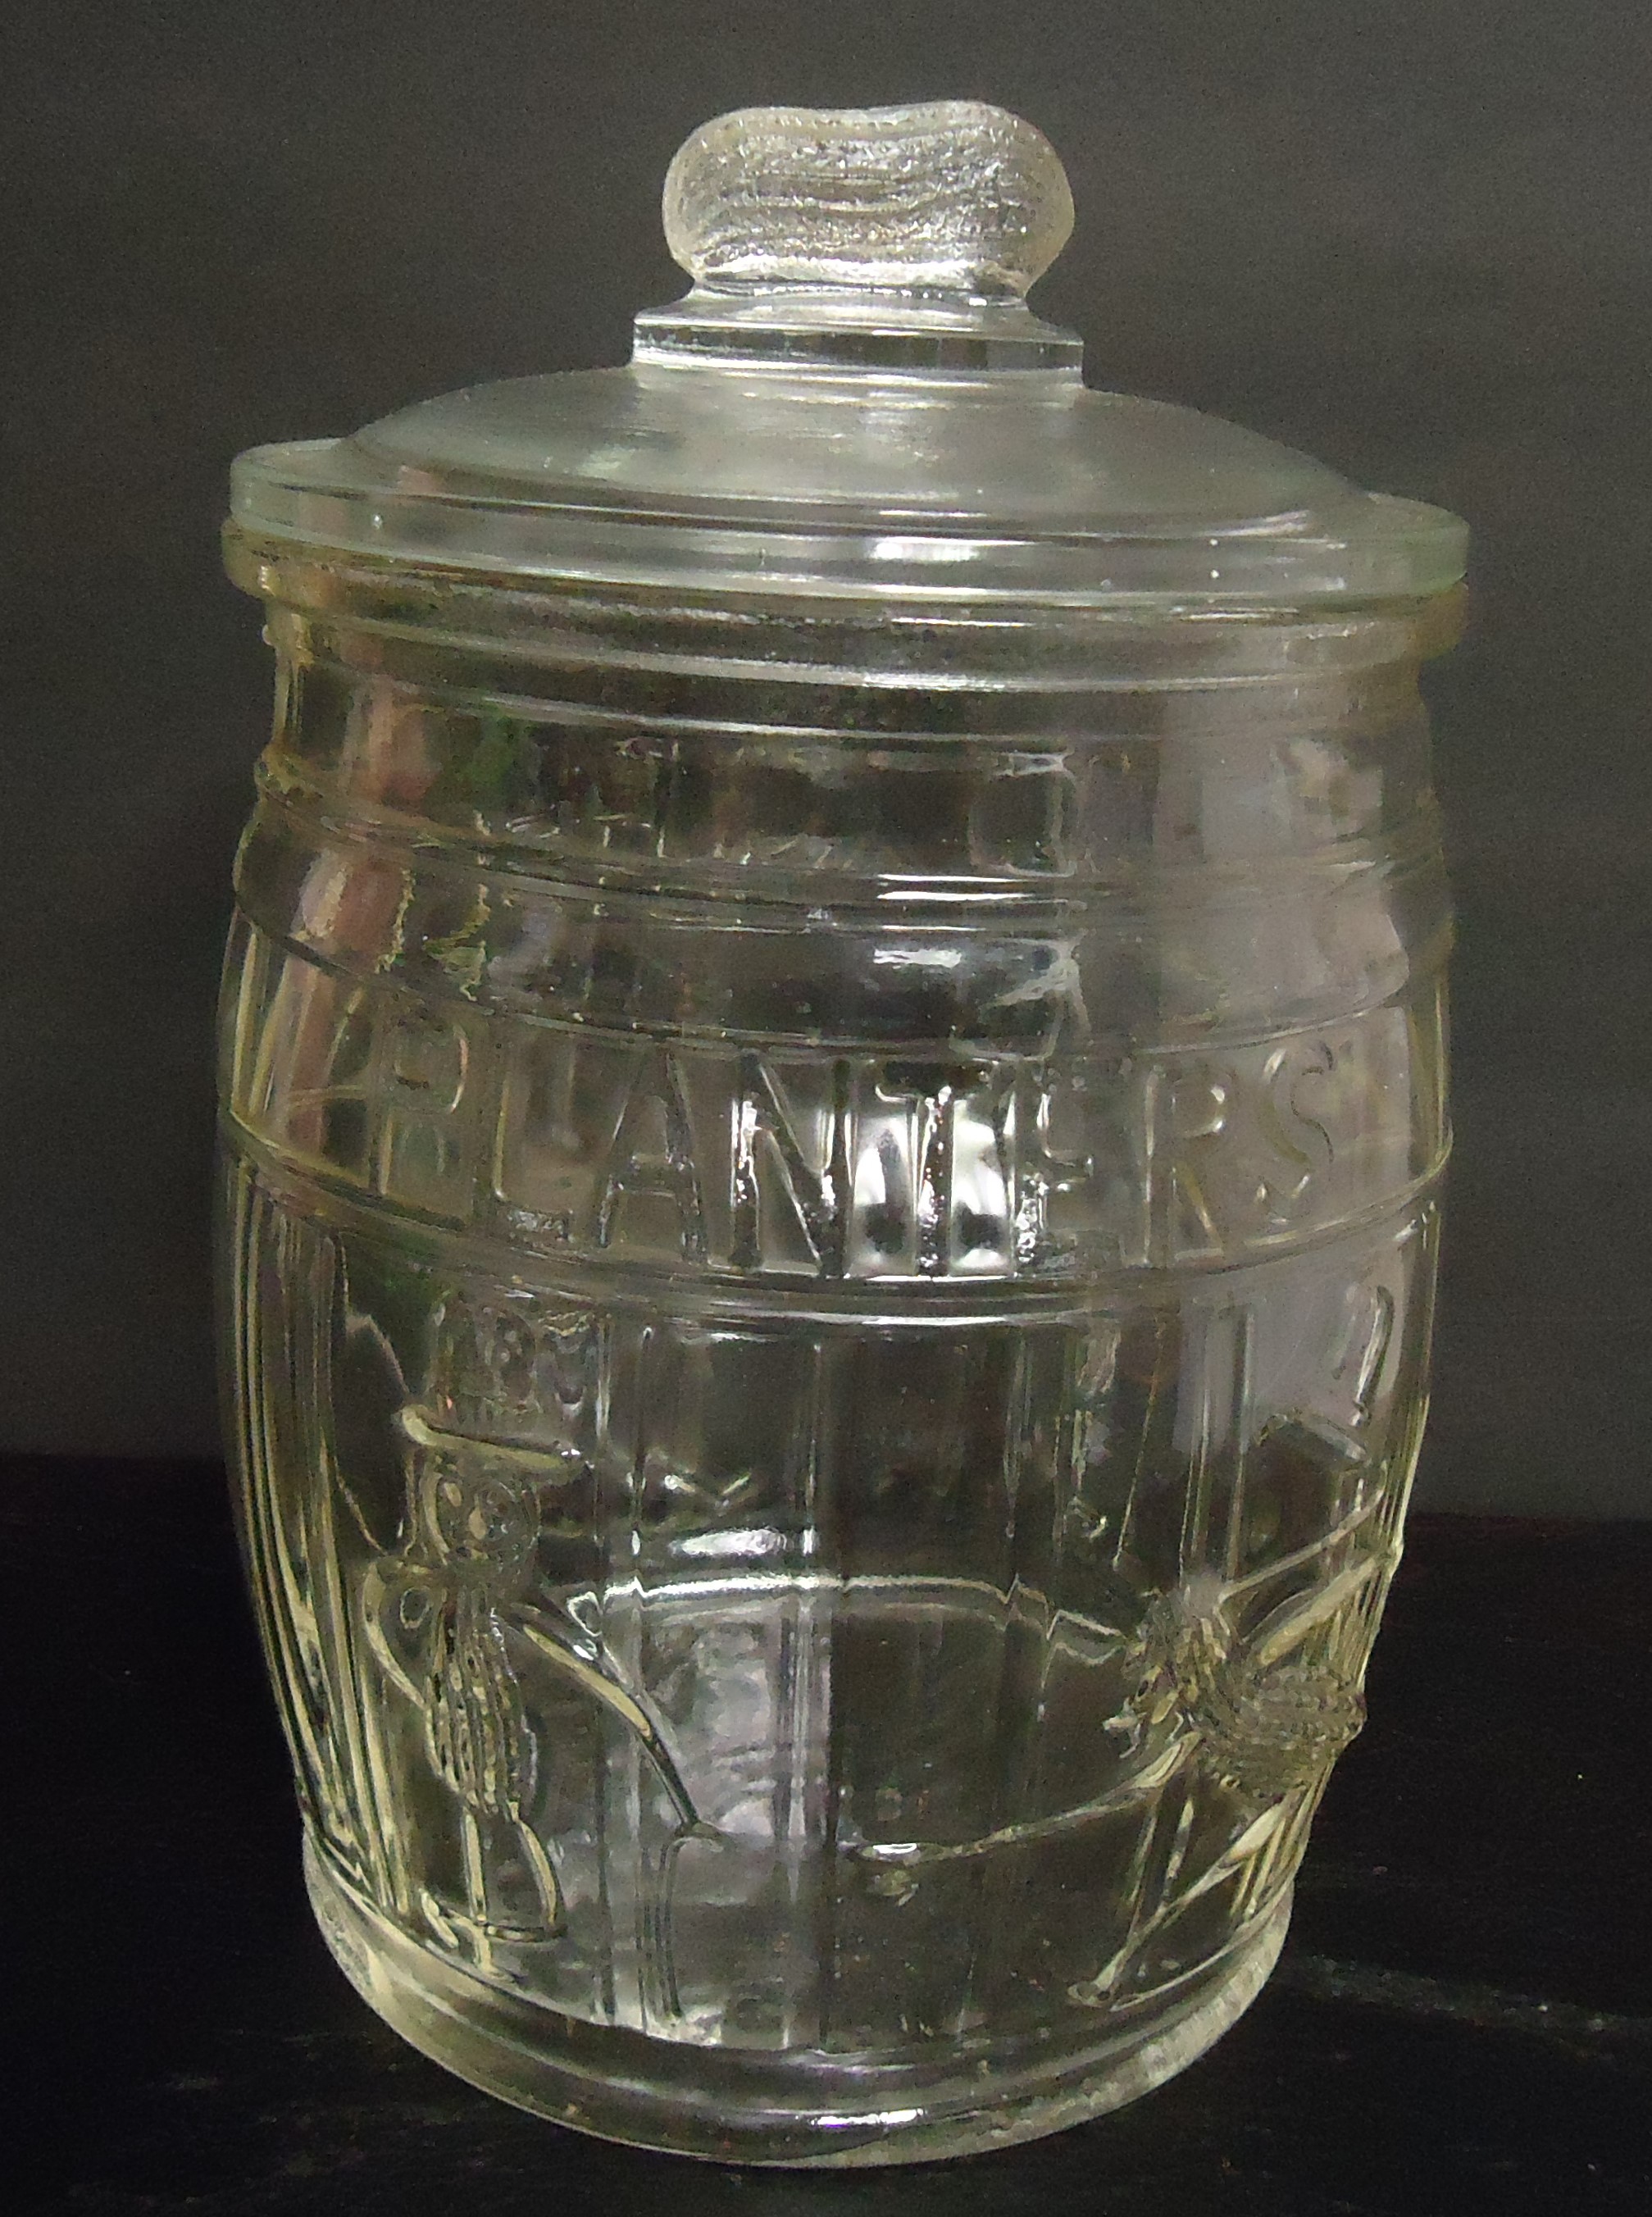 (6B) "Planters Peanut " Running Man
Cookie Jar (Clear Glass)
$75.00